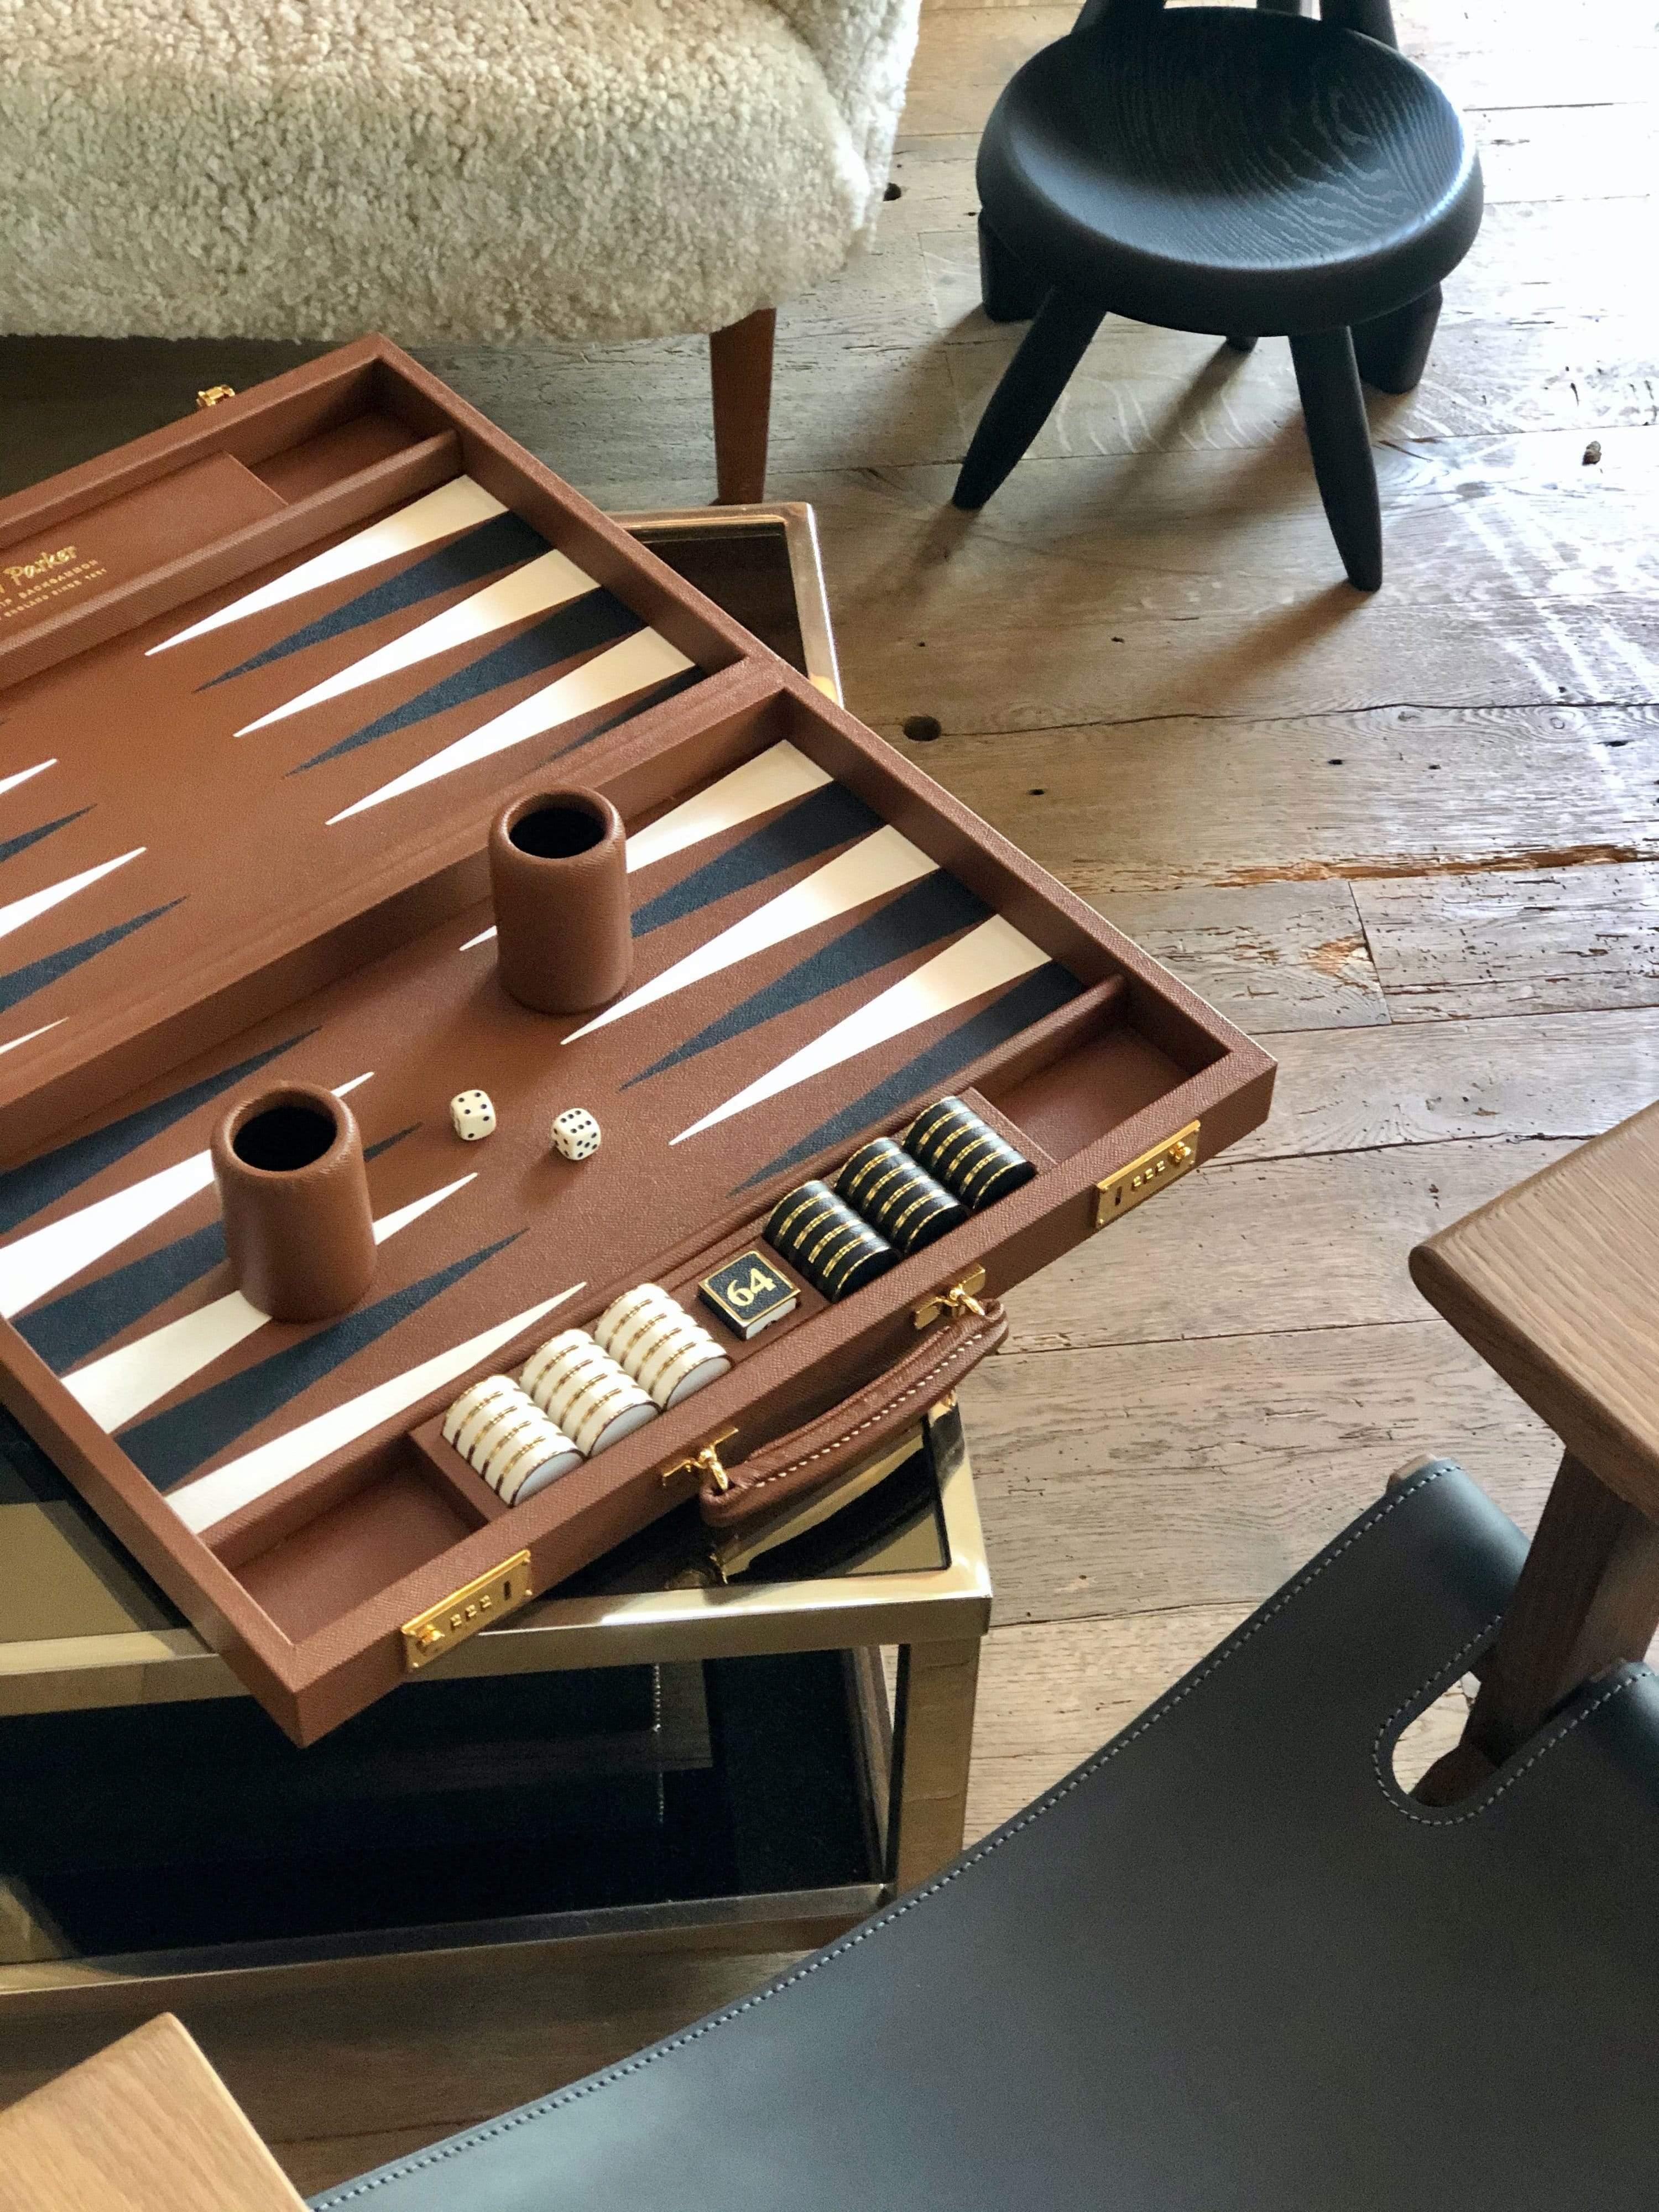 Dieses maßgefertigte Backgammon-Brett aus Leder von Geoffrey Parker hat ein Espresso-Feld mit weißen Punkten in Marin und Tornado. Die Liebe zum Detail, das handwerkliche Geschick beim Einlegen und die Verwendung von speziell gegerbtem Leder für die